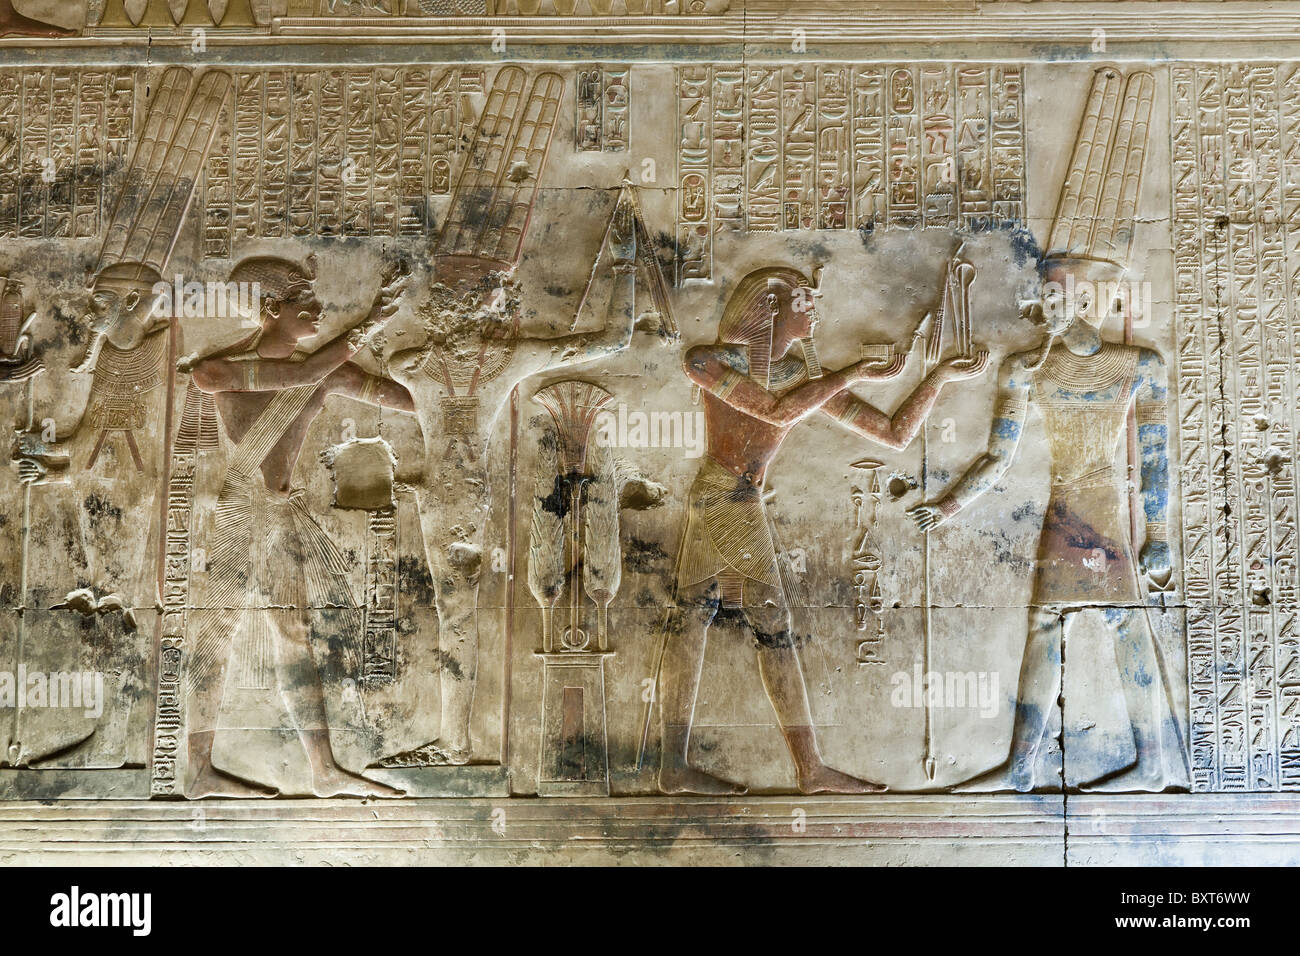 Travail de secours de sanctuaire dans le Temple de Seti I à Abydos, ancienne Abdju, vallée du Nil Egypte Banque D'Images